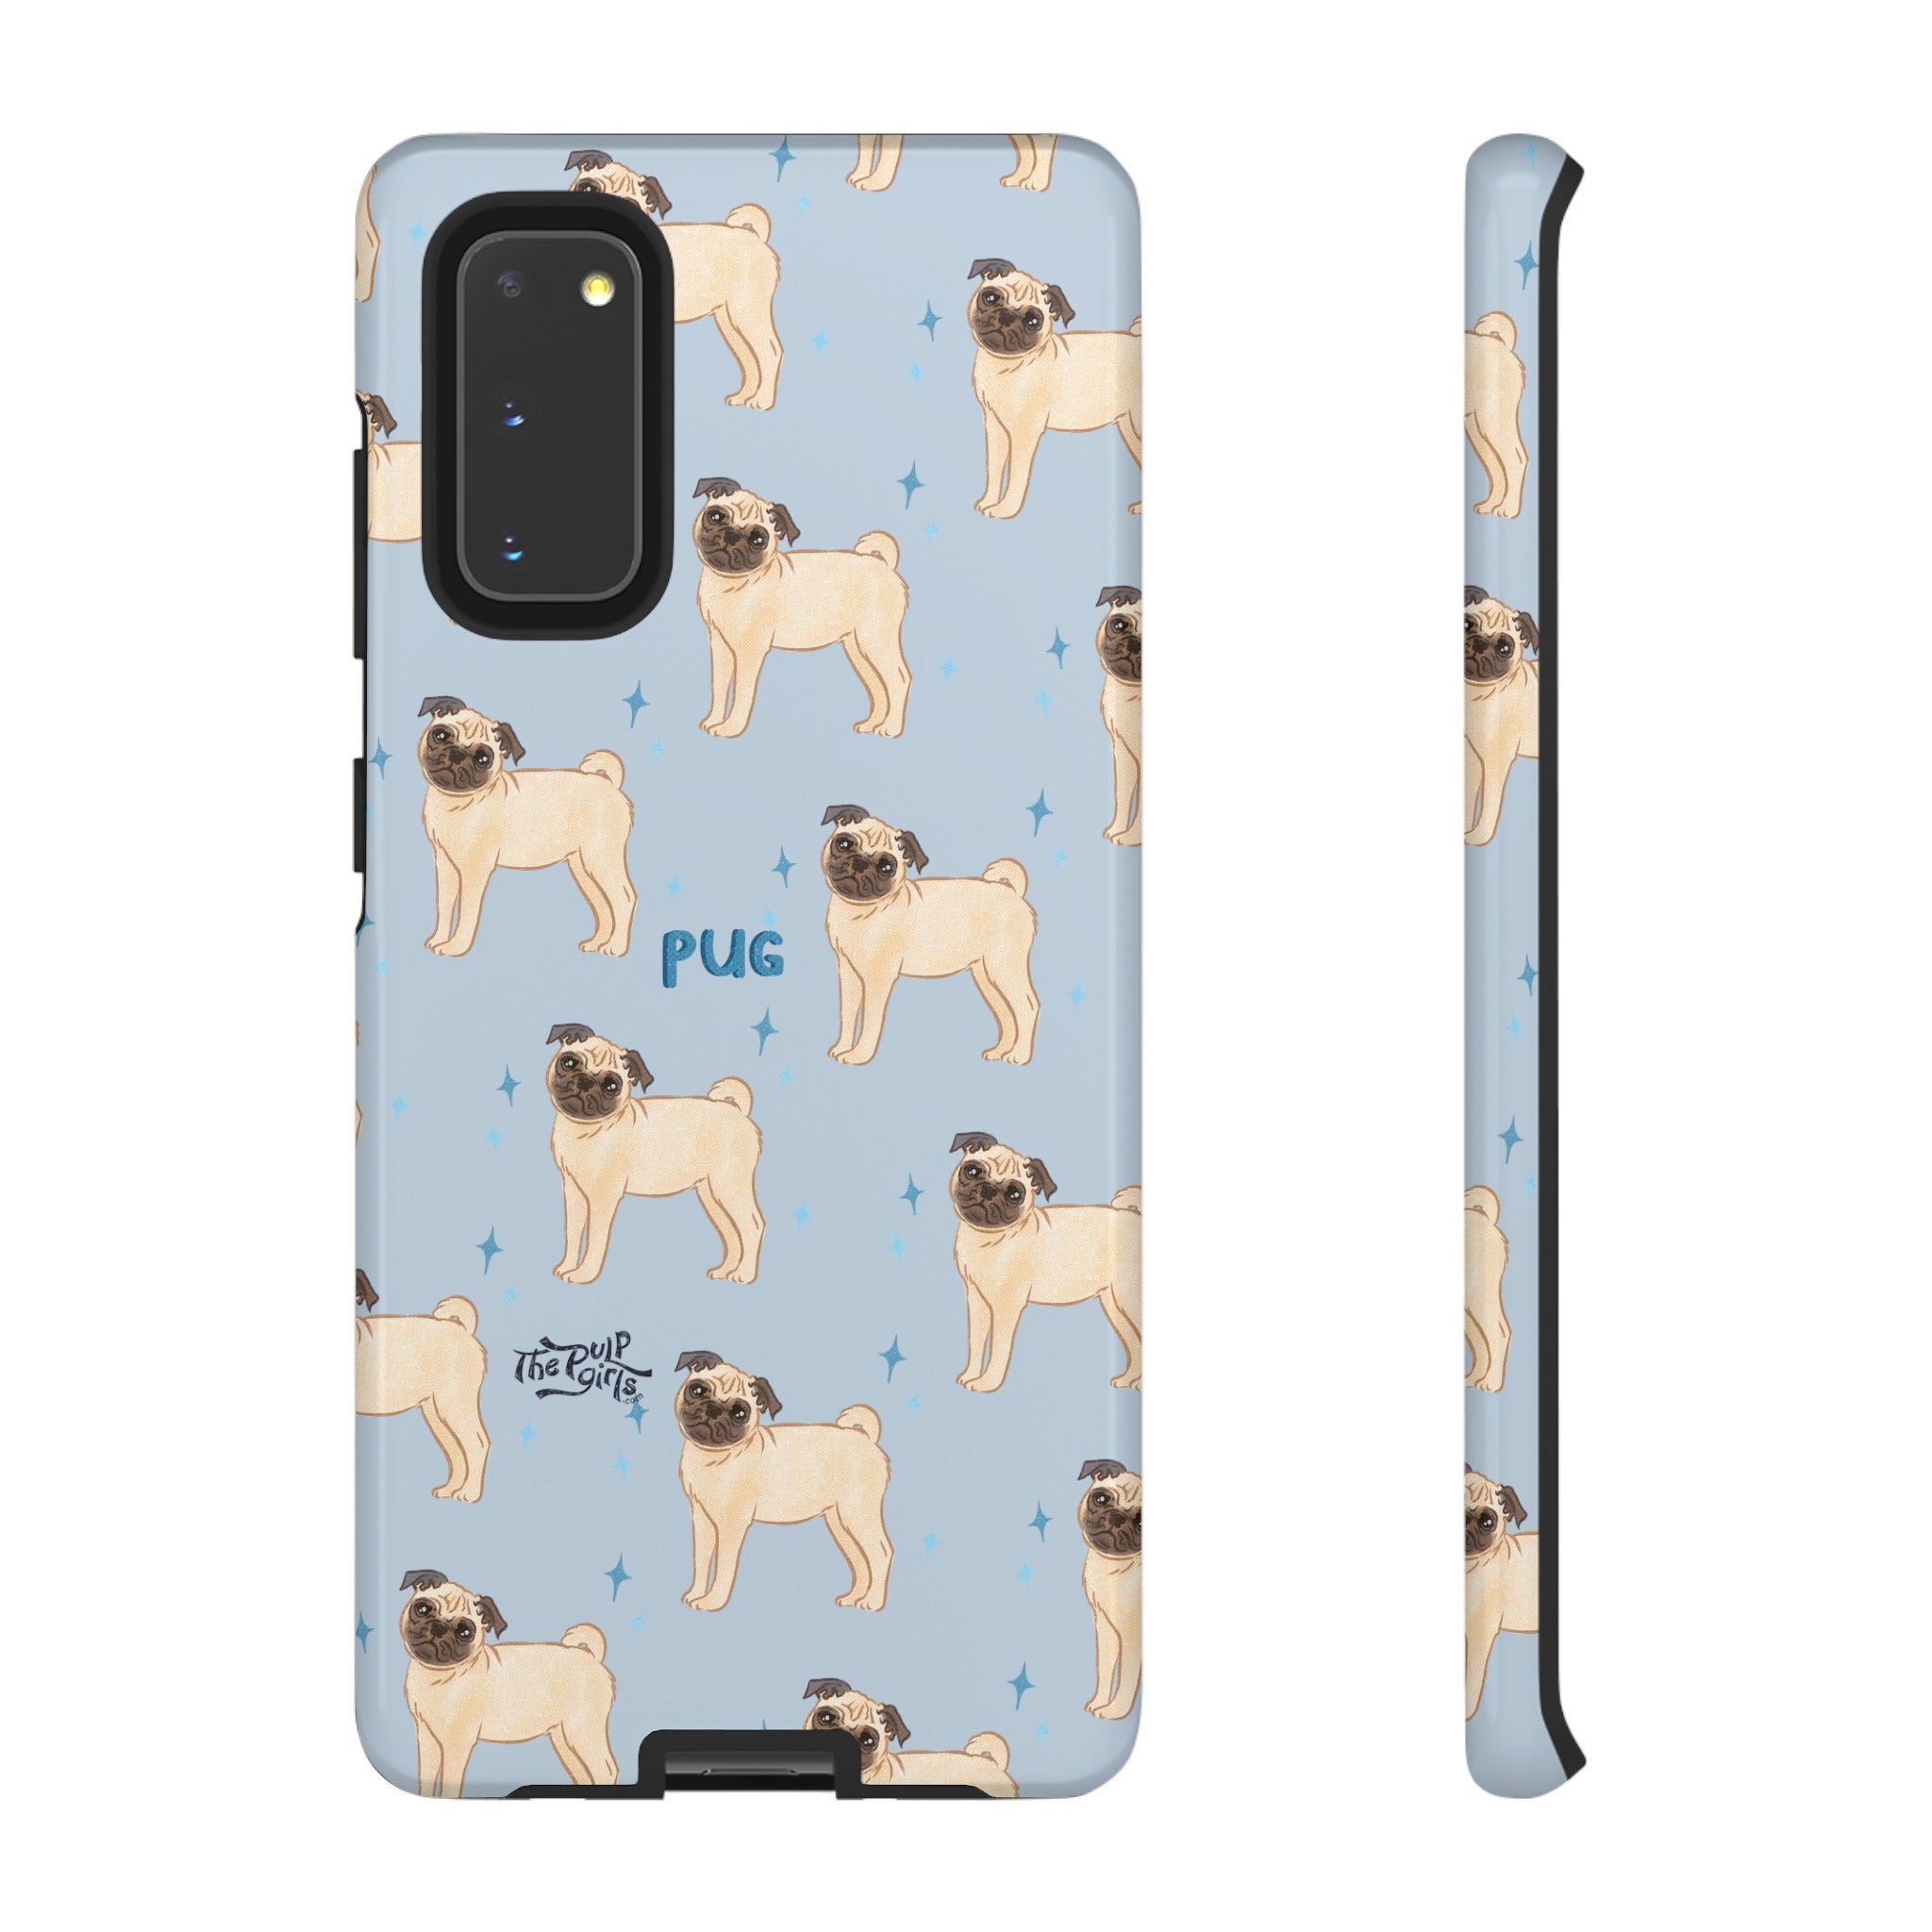 Pug Dog Phone Case